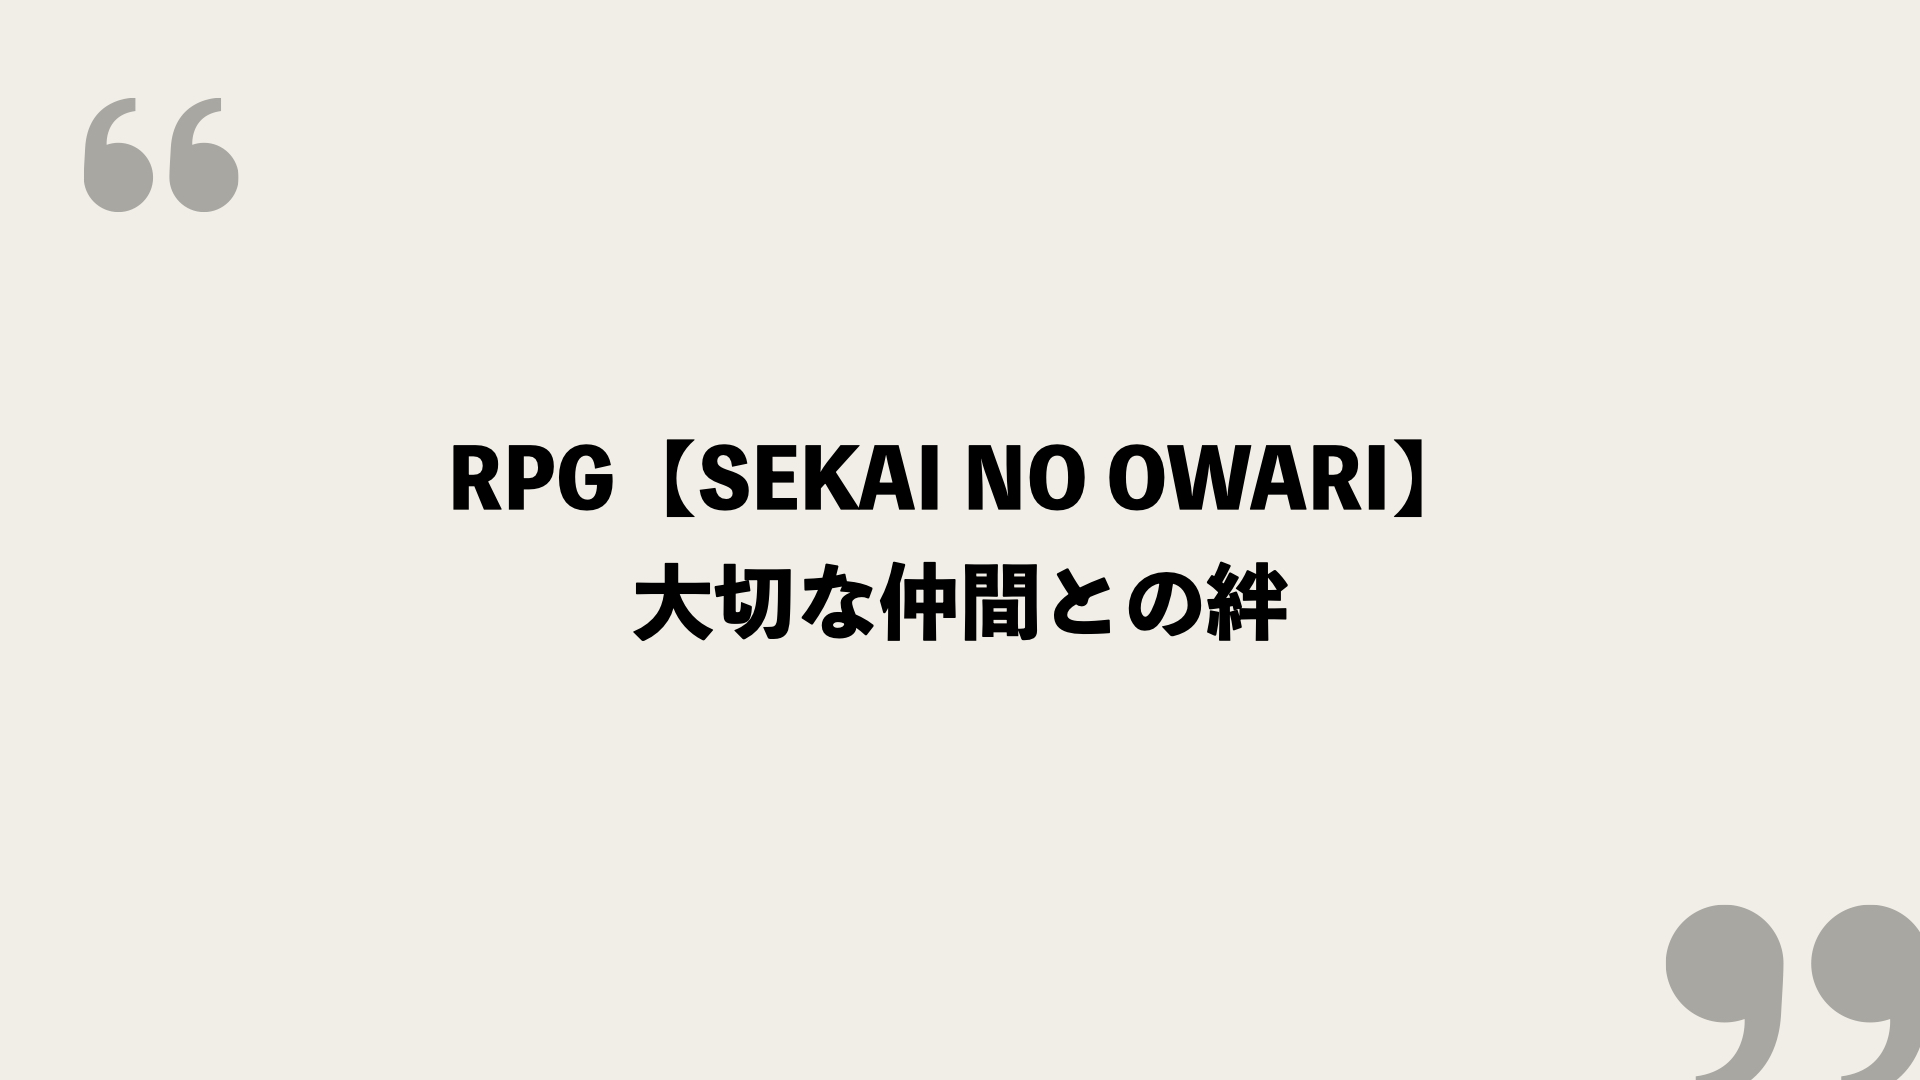 Rpg Sekai No Owari 歌詞の意味を考察 大切な仲間との絆 Framu Media